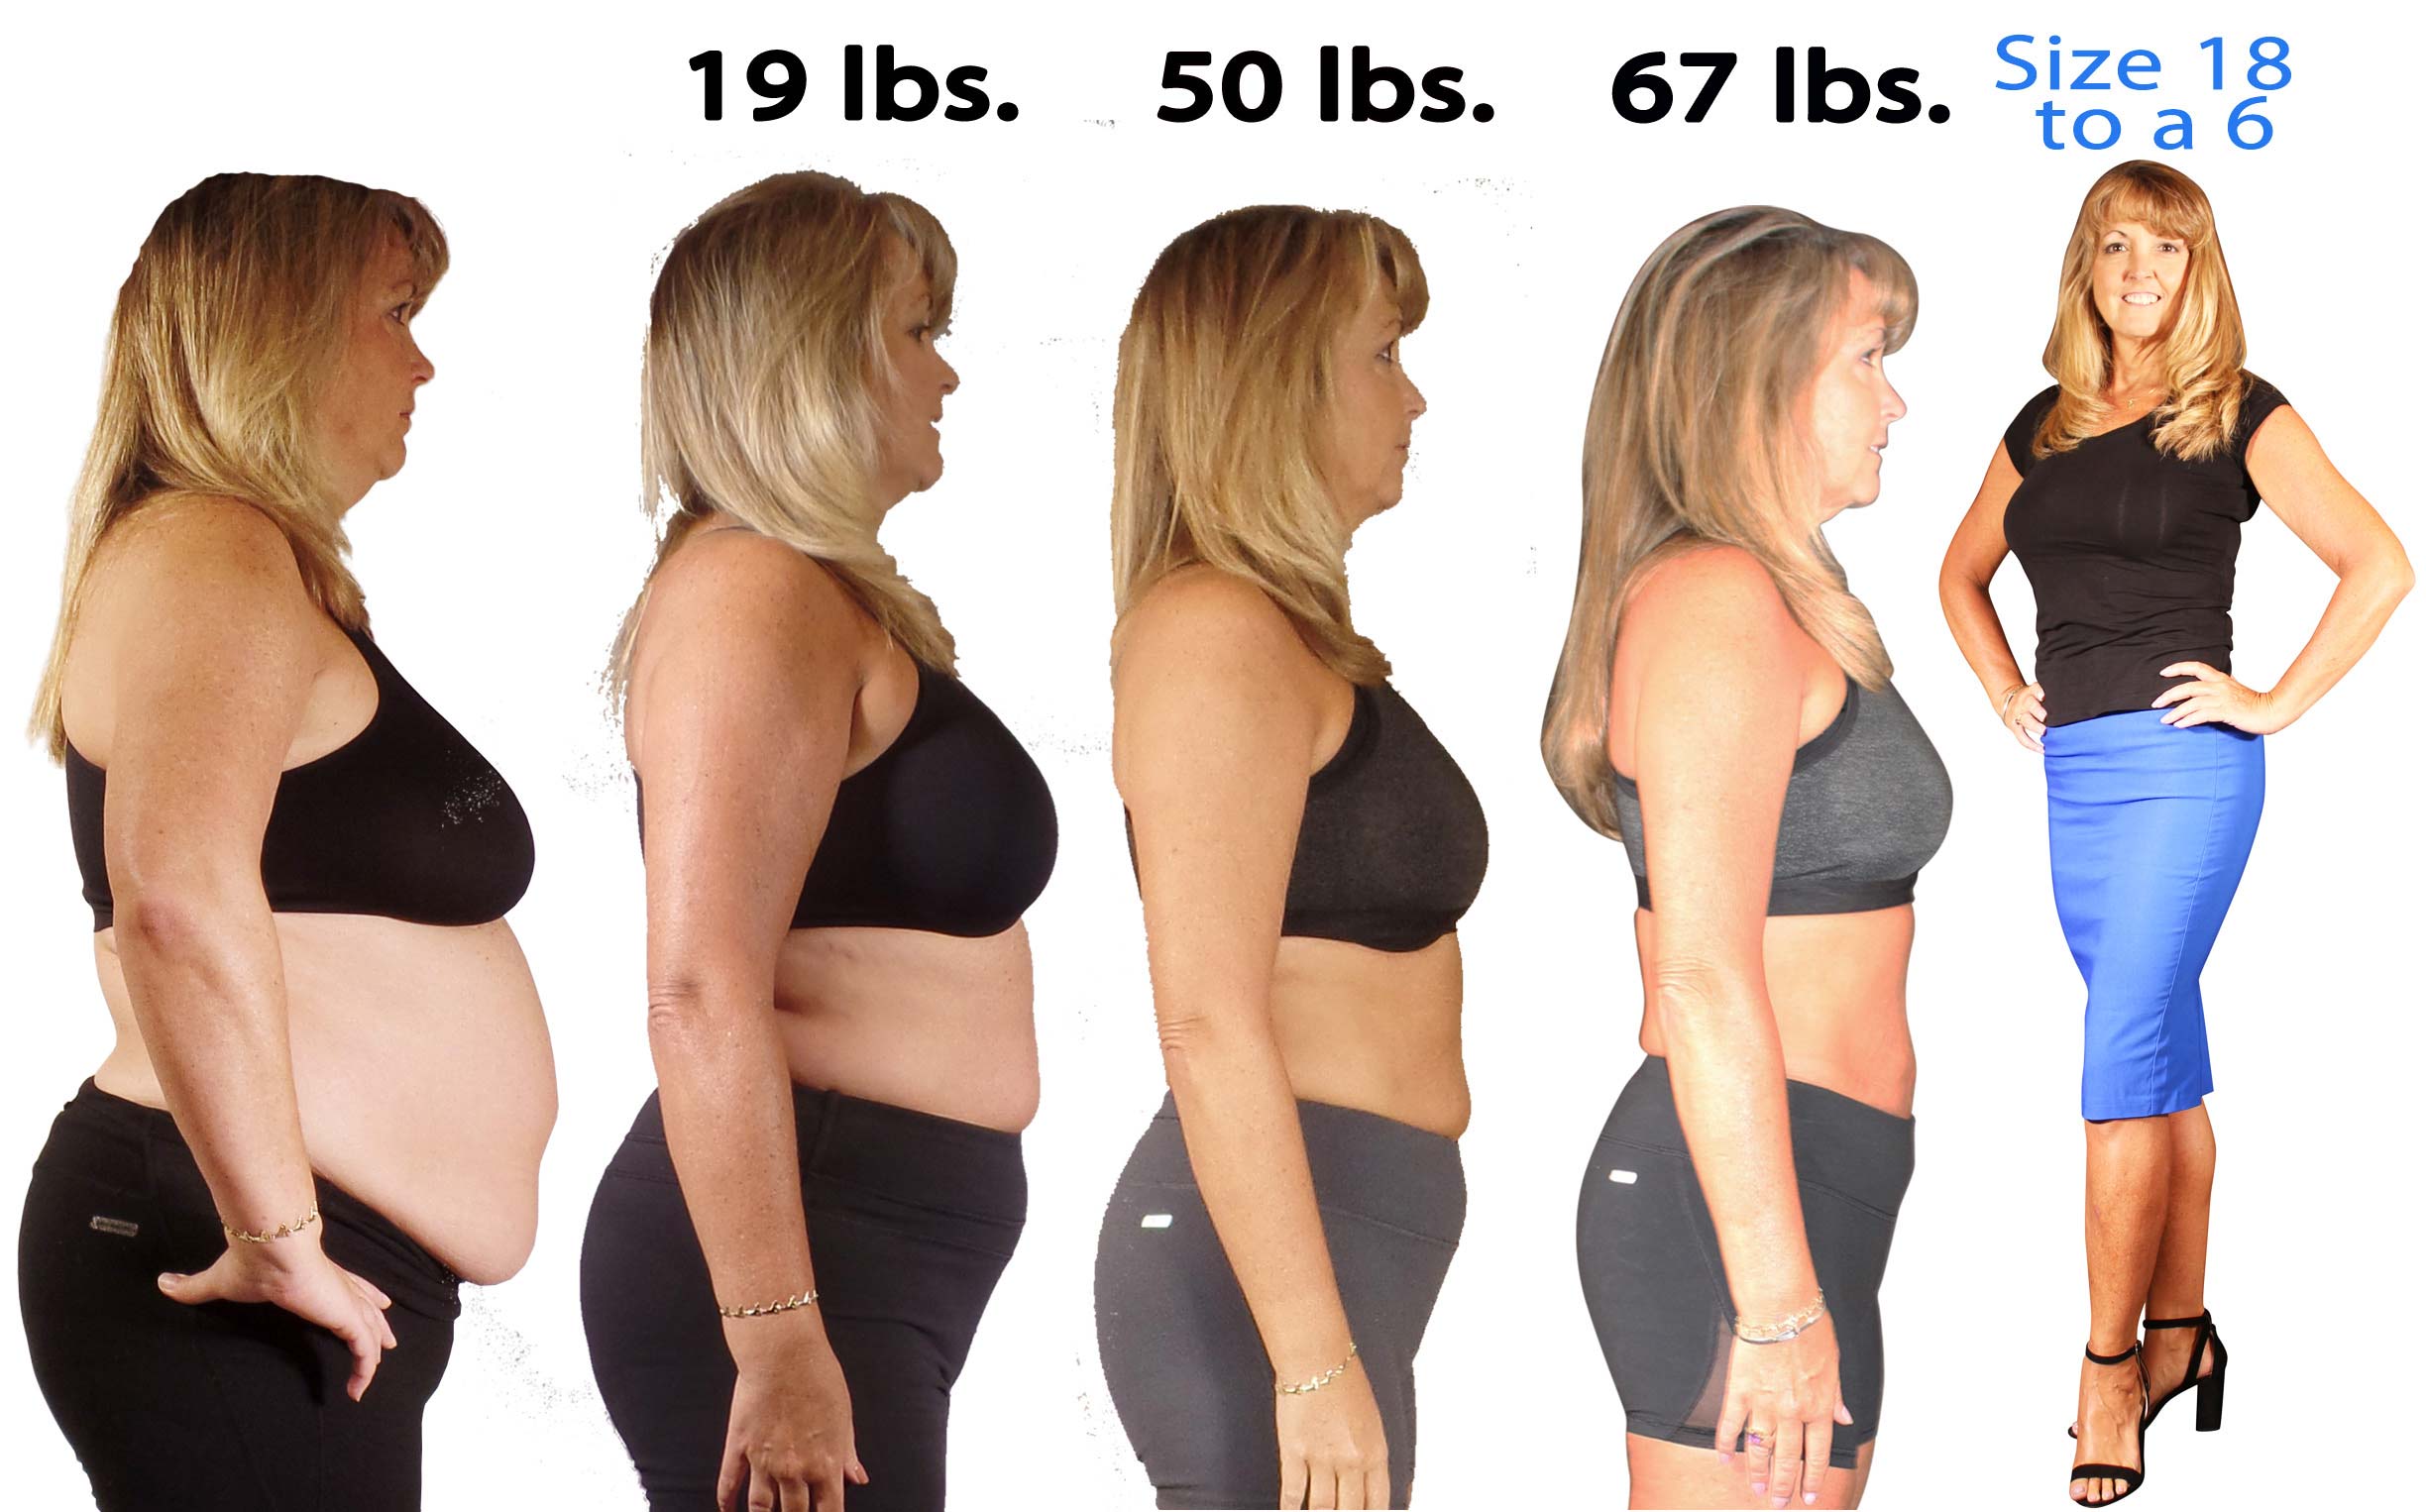 Kim's weight loss progression